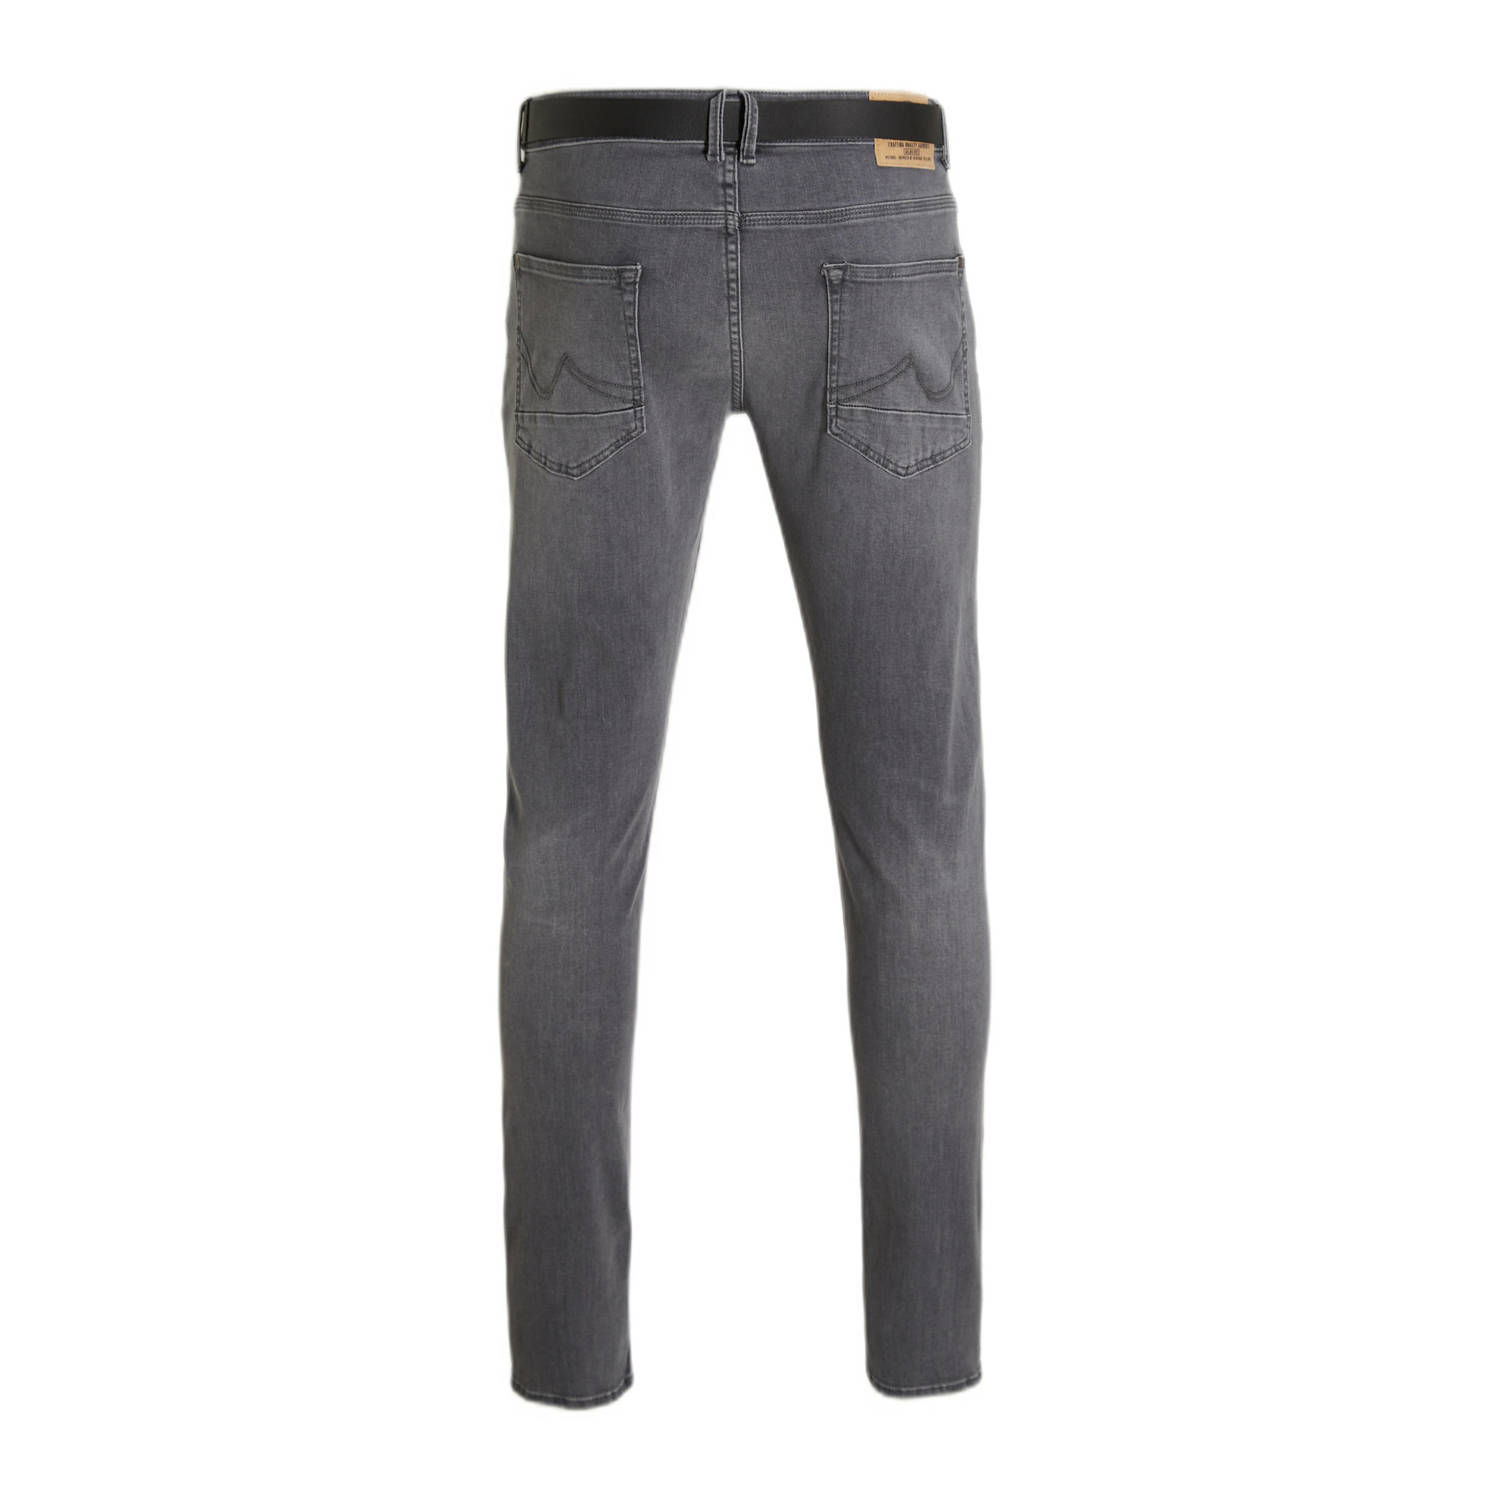 Petrol Industries slim fit jeans SEAHAM blue grey